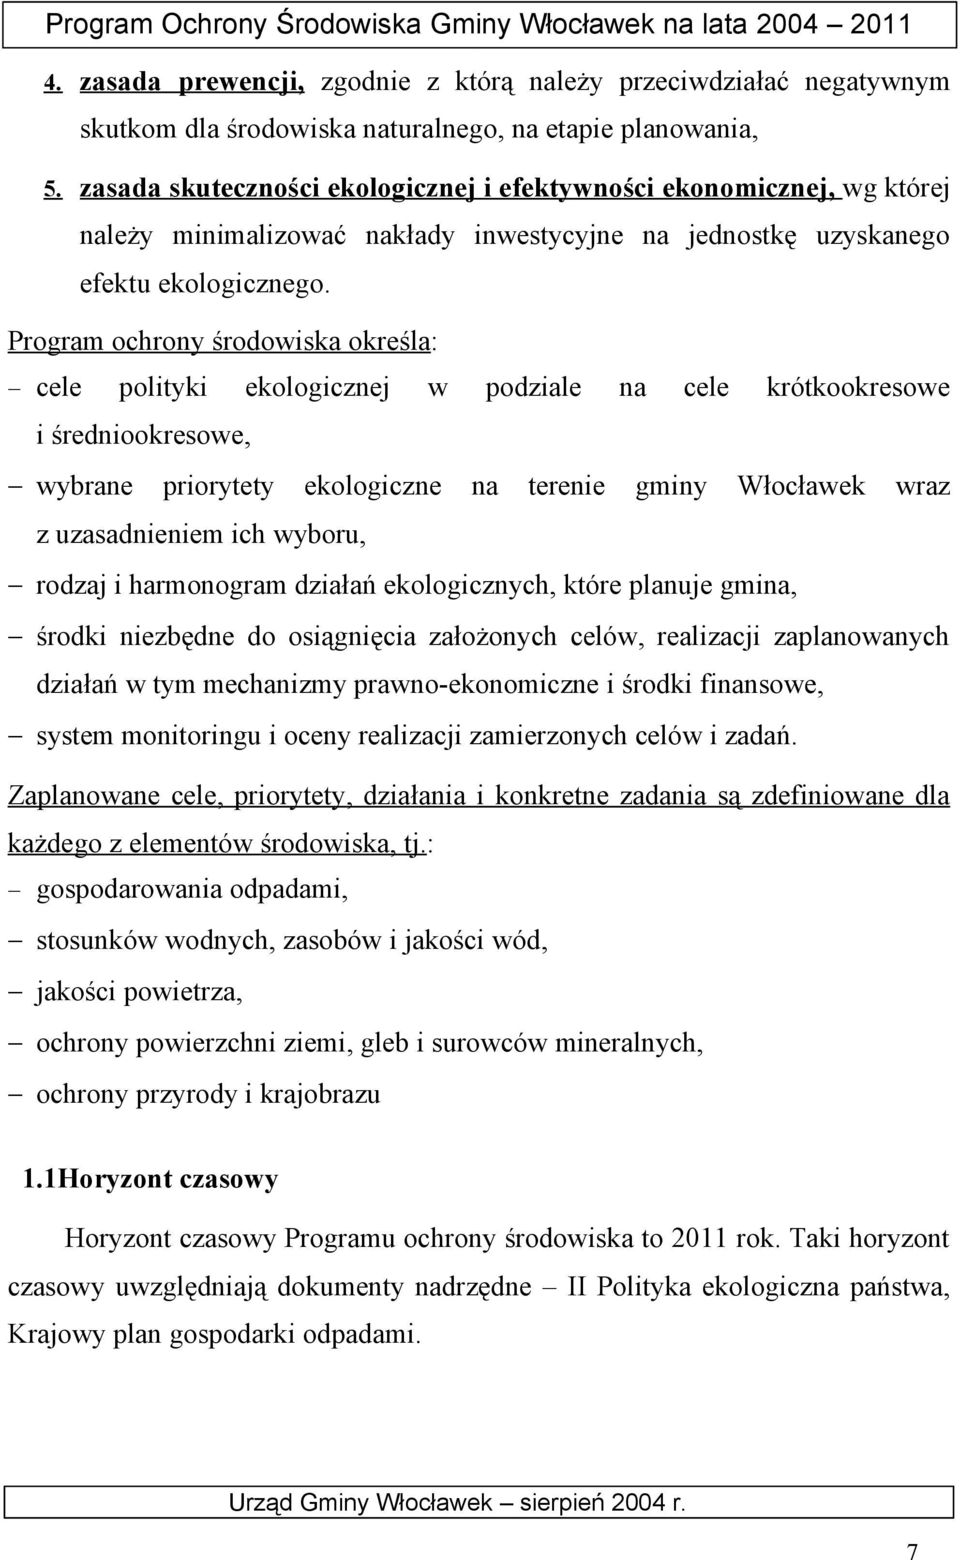 Program ochrony środowiska określa: cele polityki ekologicznej w podziale na cele krótkookresowe i średniookresowe, wybrane priorytety ekologiczne na terenie gminy Włocławek wraz z uzasadnieniem ich